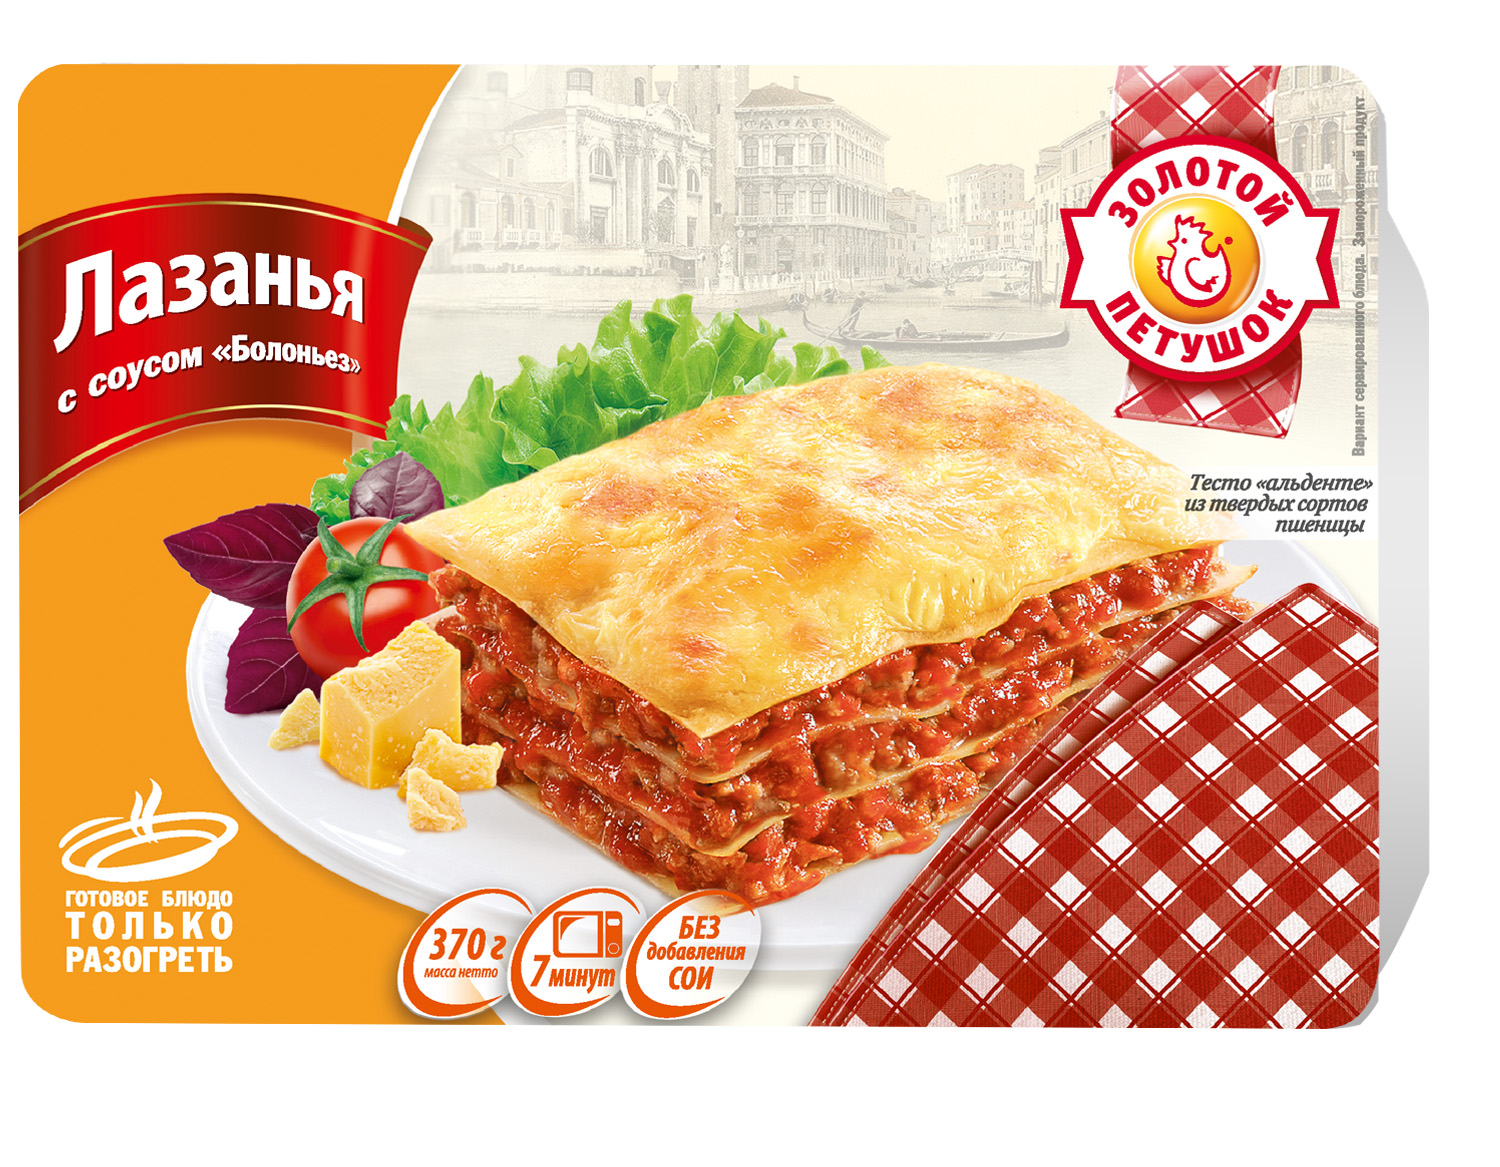 «Bolognese» Lasagna